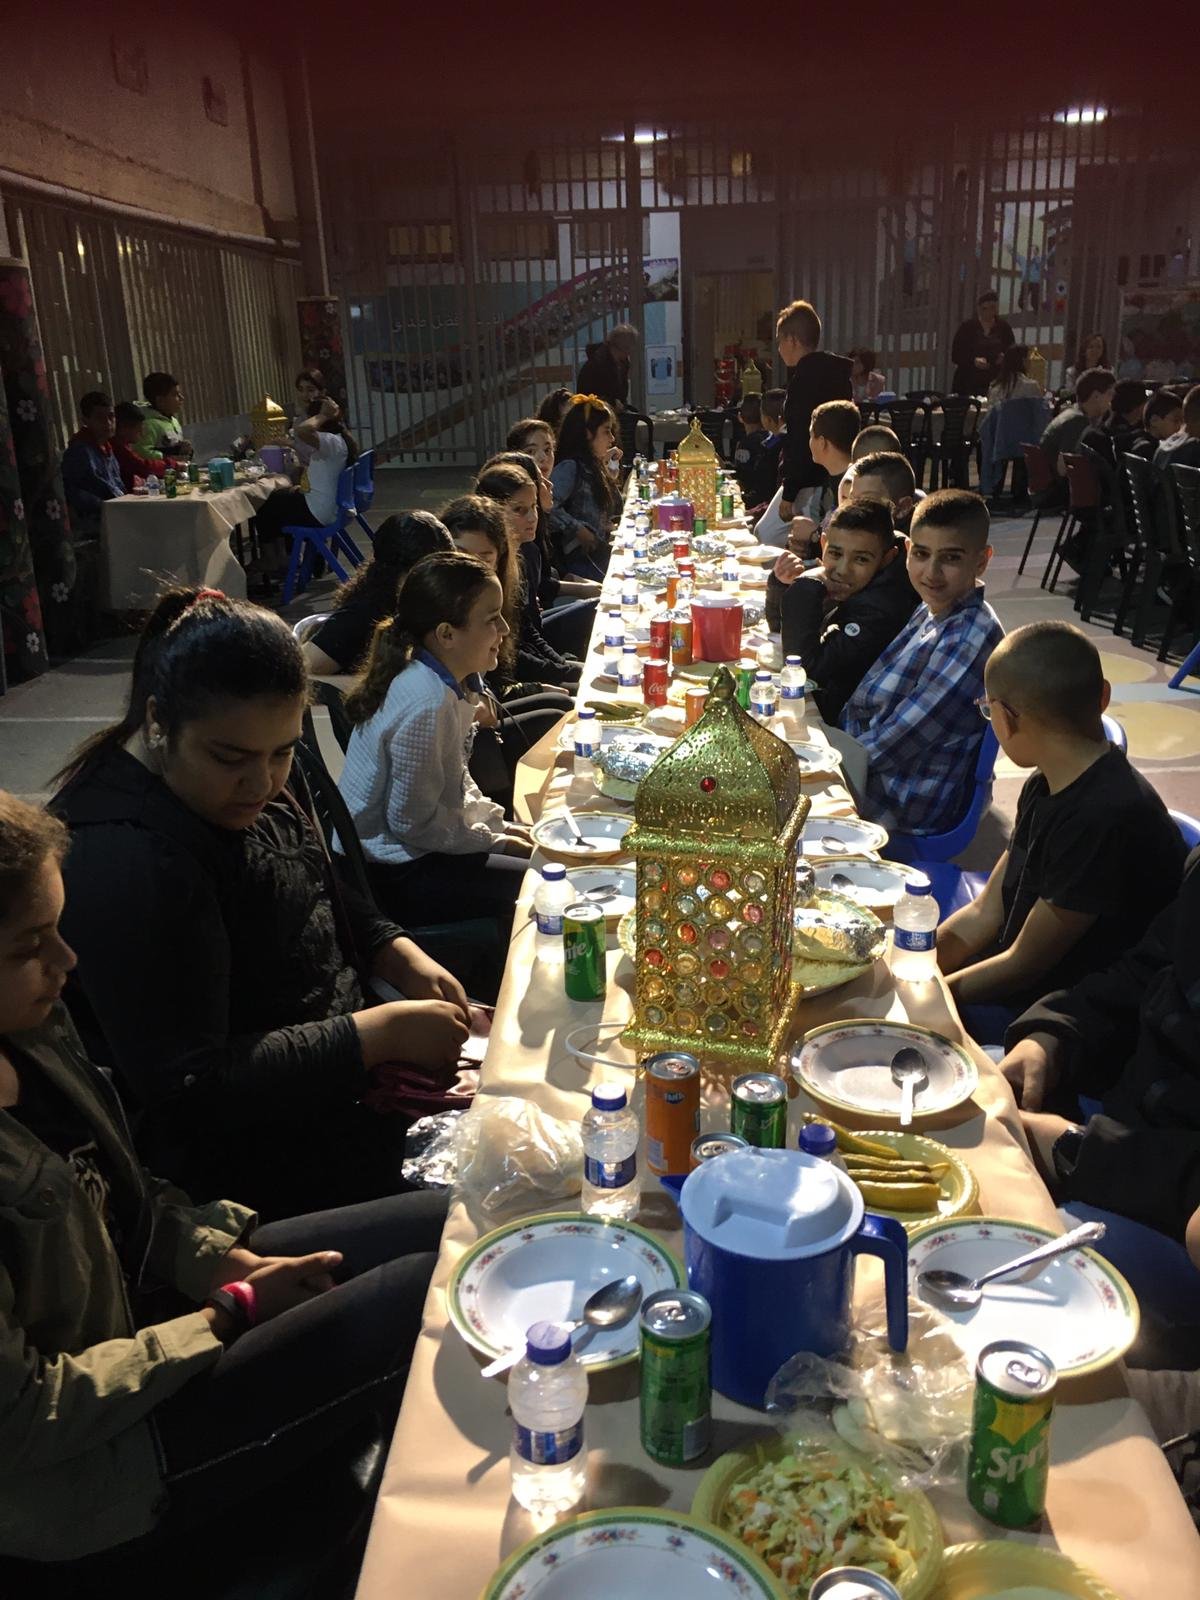 أمسية رمضانية تُعيد النكهة لطقوس وروحانيات الشهر الفضيل في المدرسة الجماهيريّة بئر الأمير-الناصرة-1